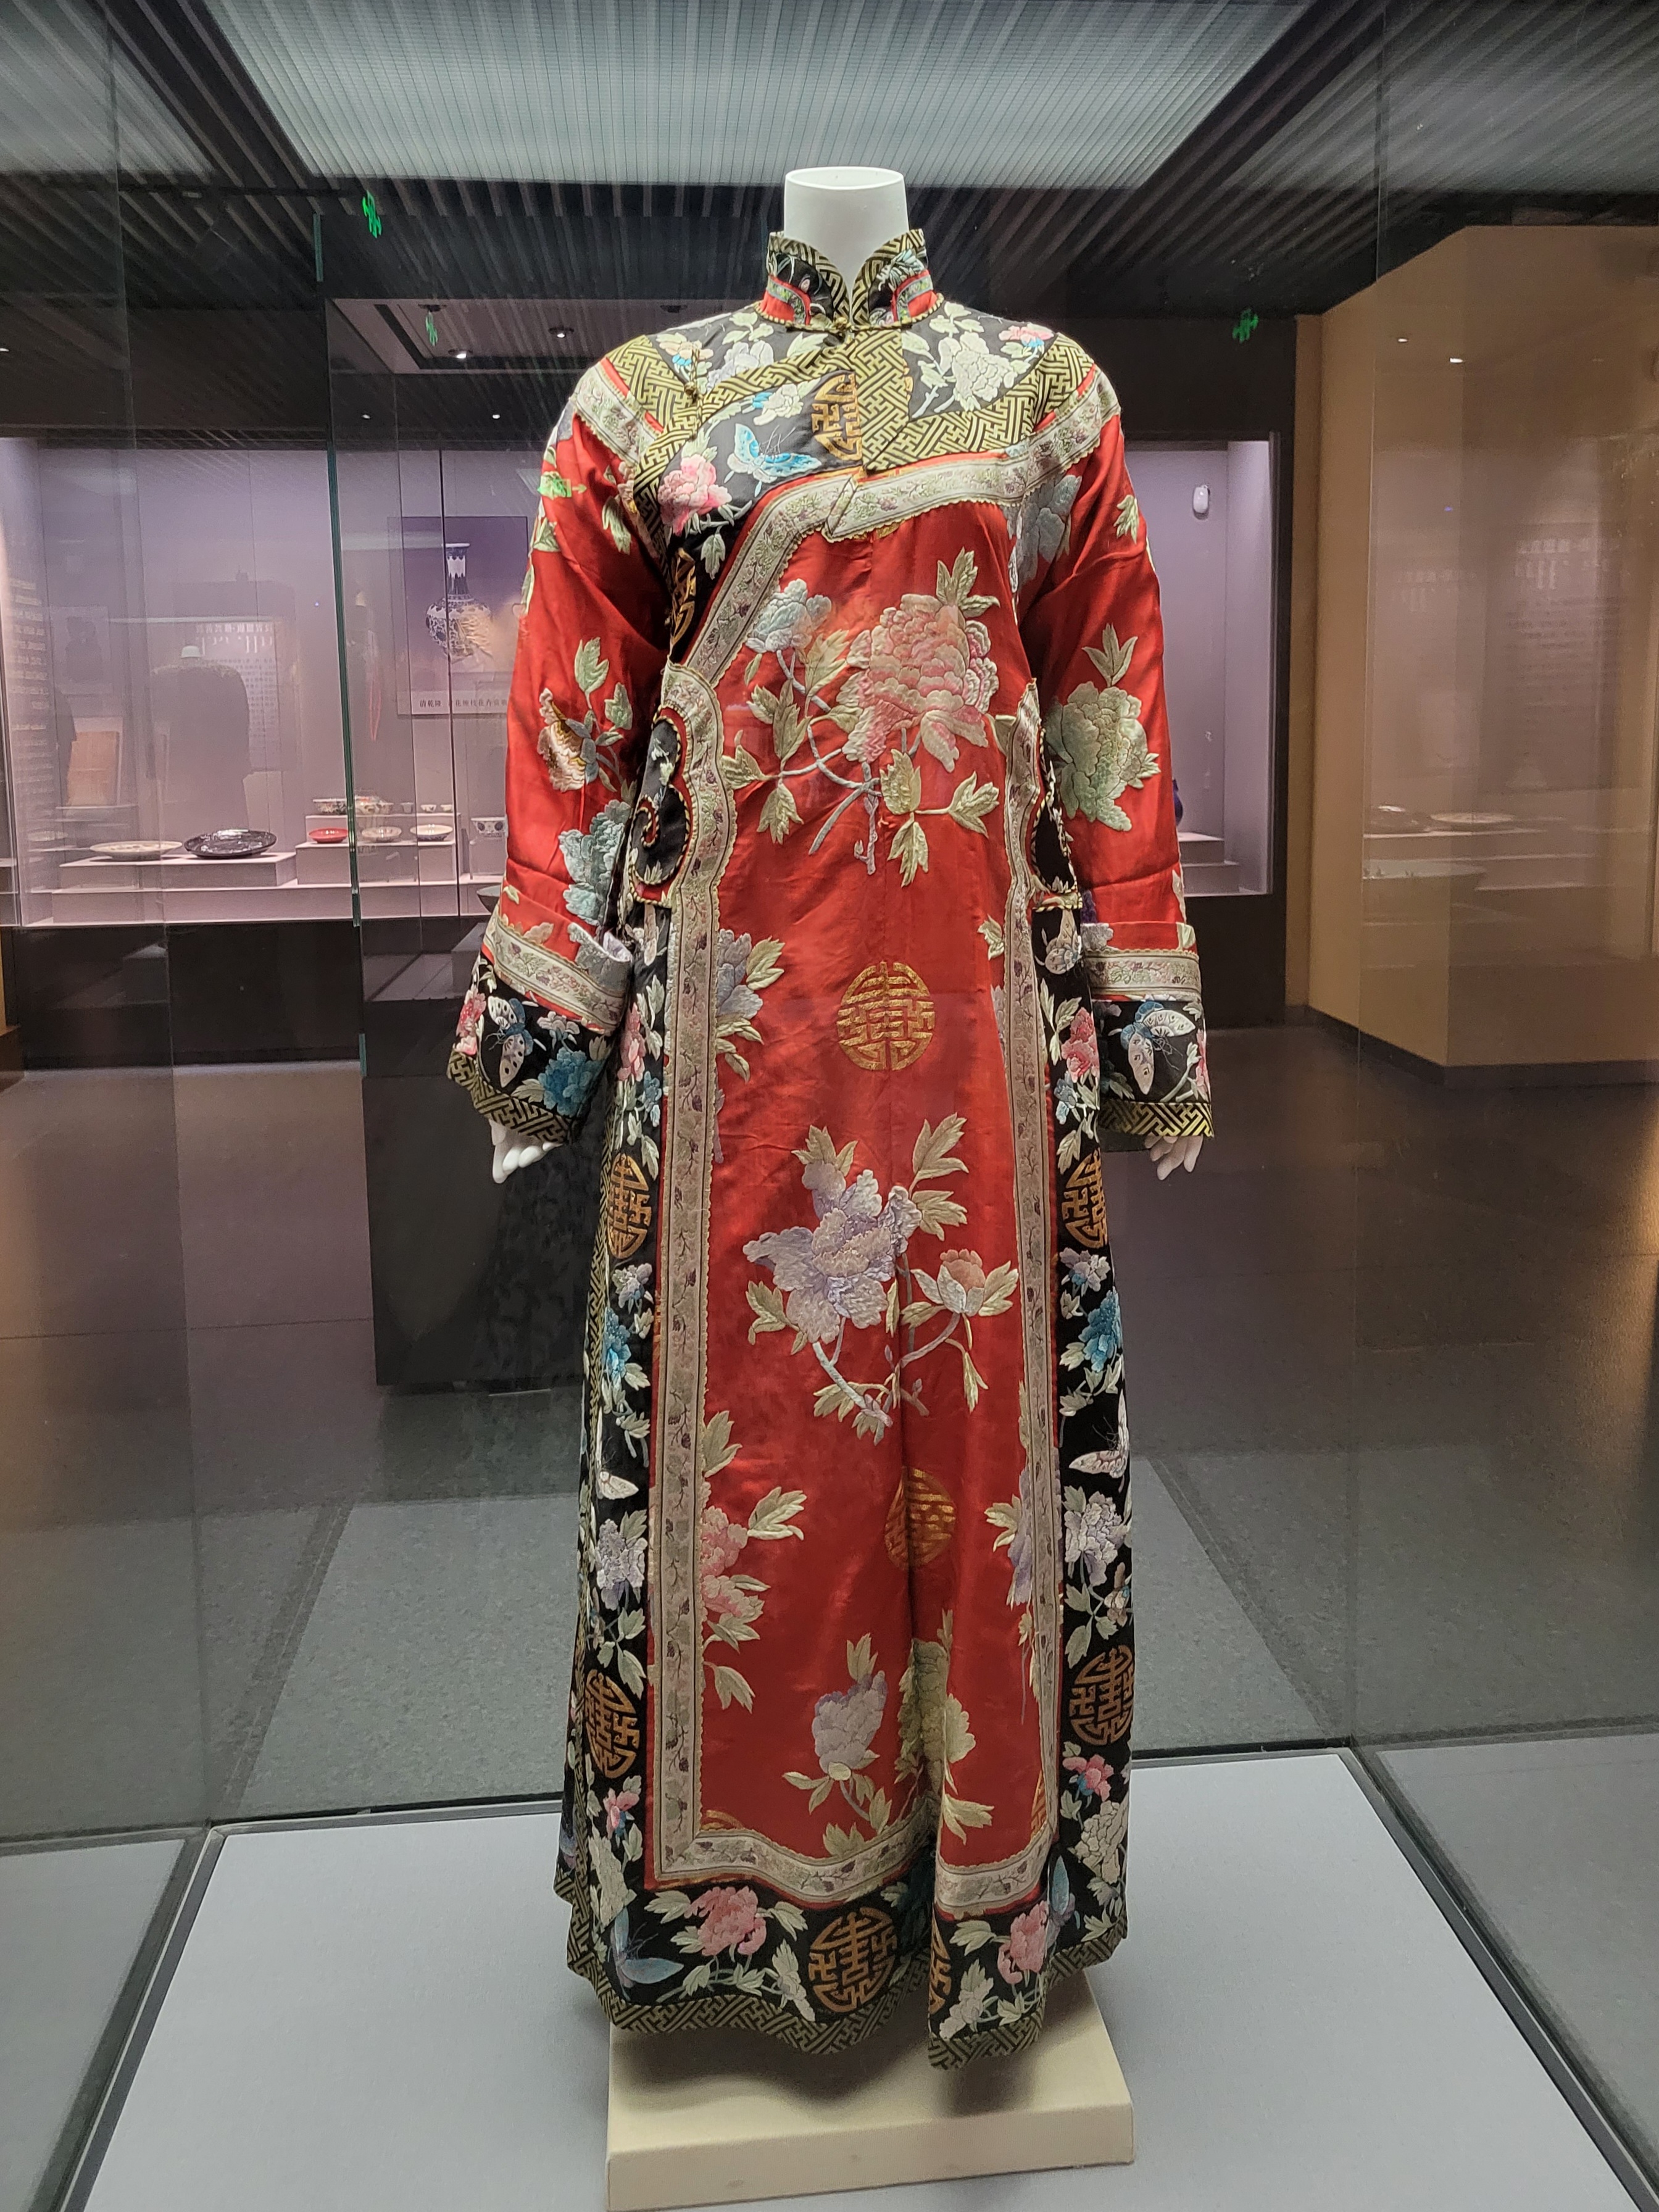 Μεταξωτό παραδοσιακό κινεζικό φόρεμα με έντονα χρώματα και εξαιρετικά κεντήματα από την έκθεση του Μουσείου Τσιφένγκ (赤峰博物馆: chìfēng bówùguǎn) (Φωτογραφία Εύα Παπαζή/CRI Greek)